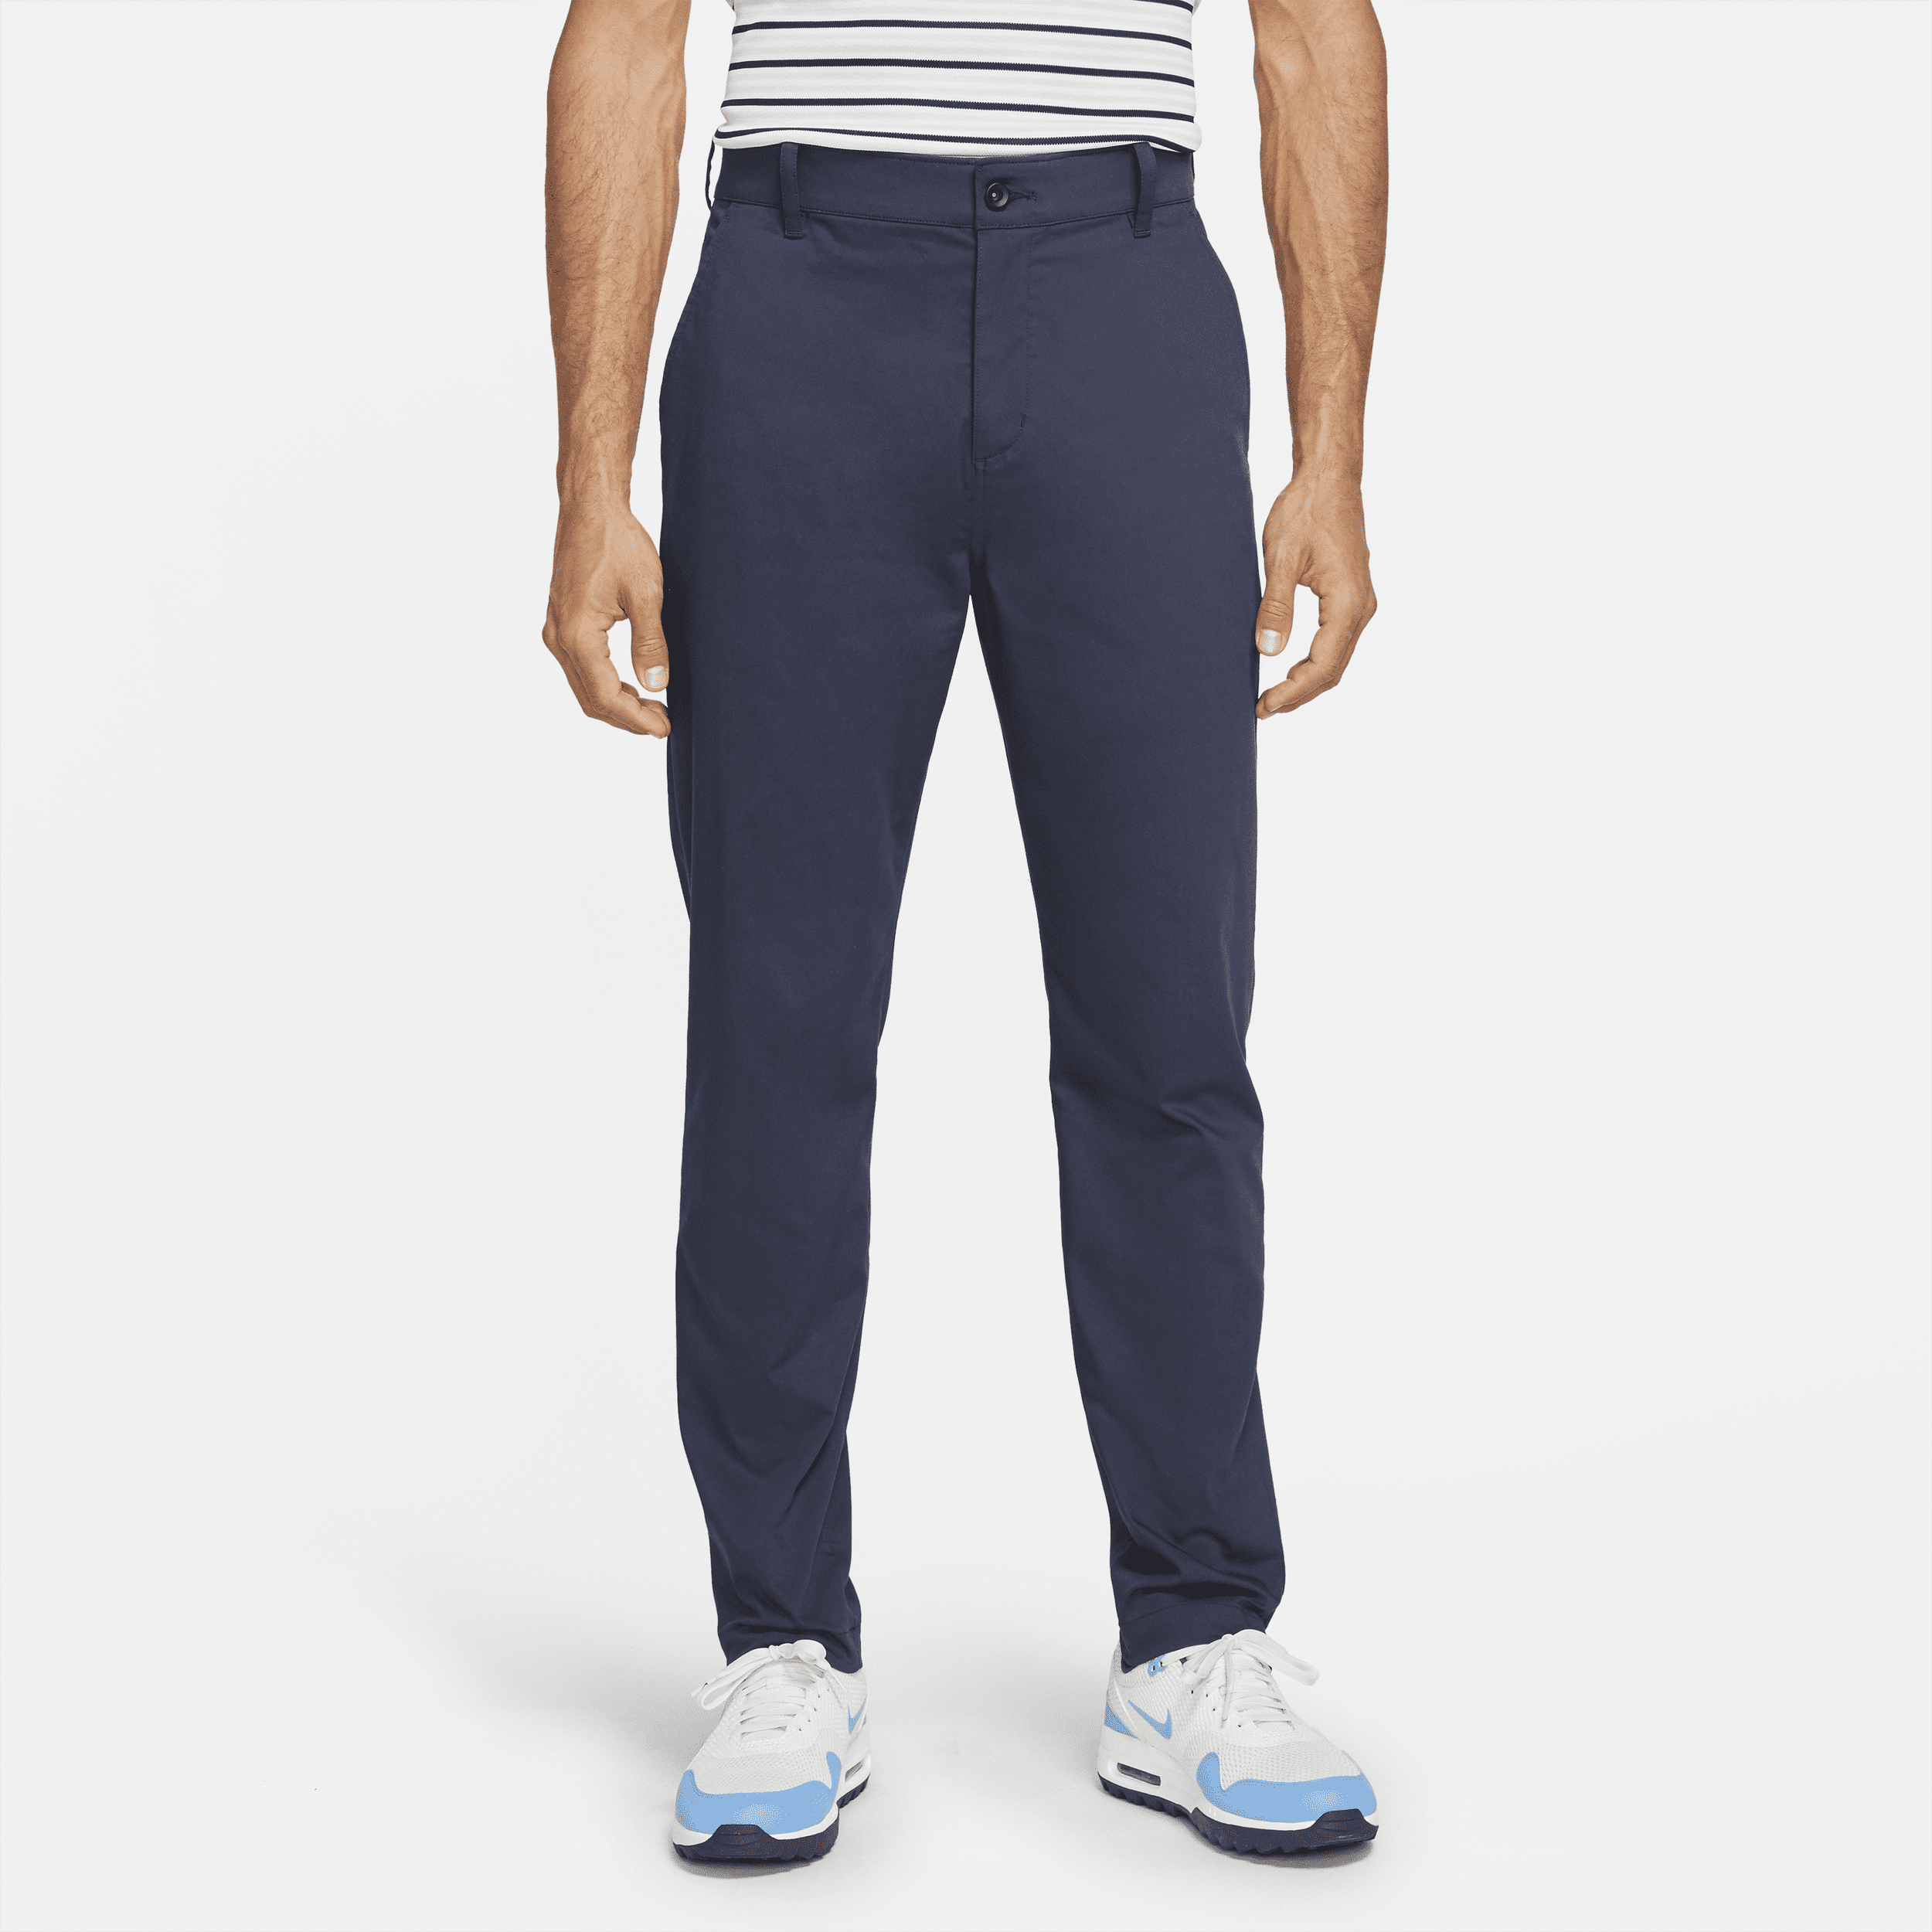 Nike Dri-FIT UV Chino golfbroek met slanke pasvorm voor heren - Blauw